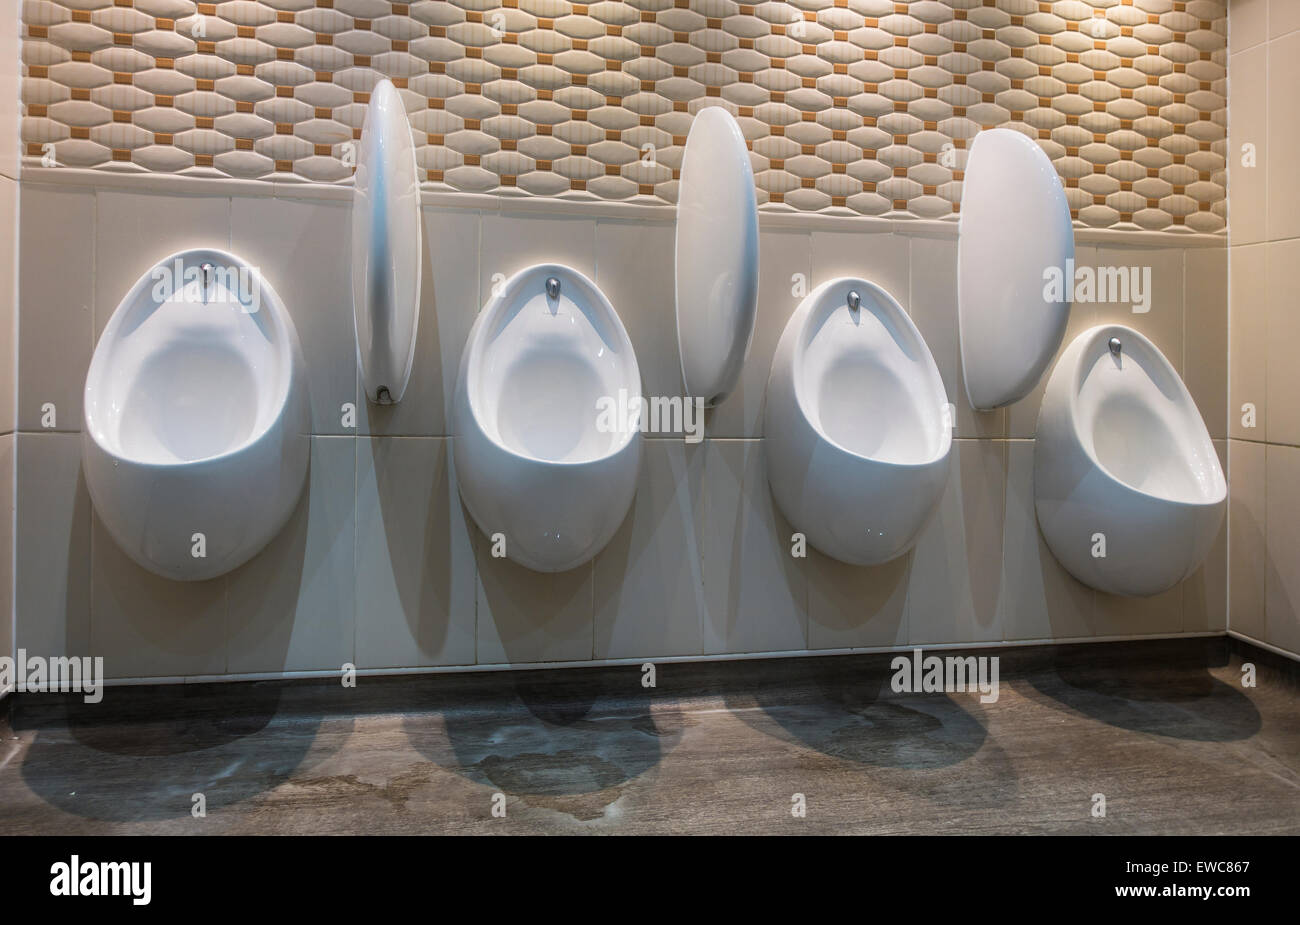 Mens moderno orinal urinarios Foto de stock